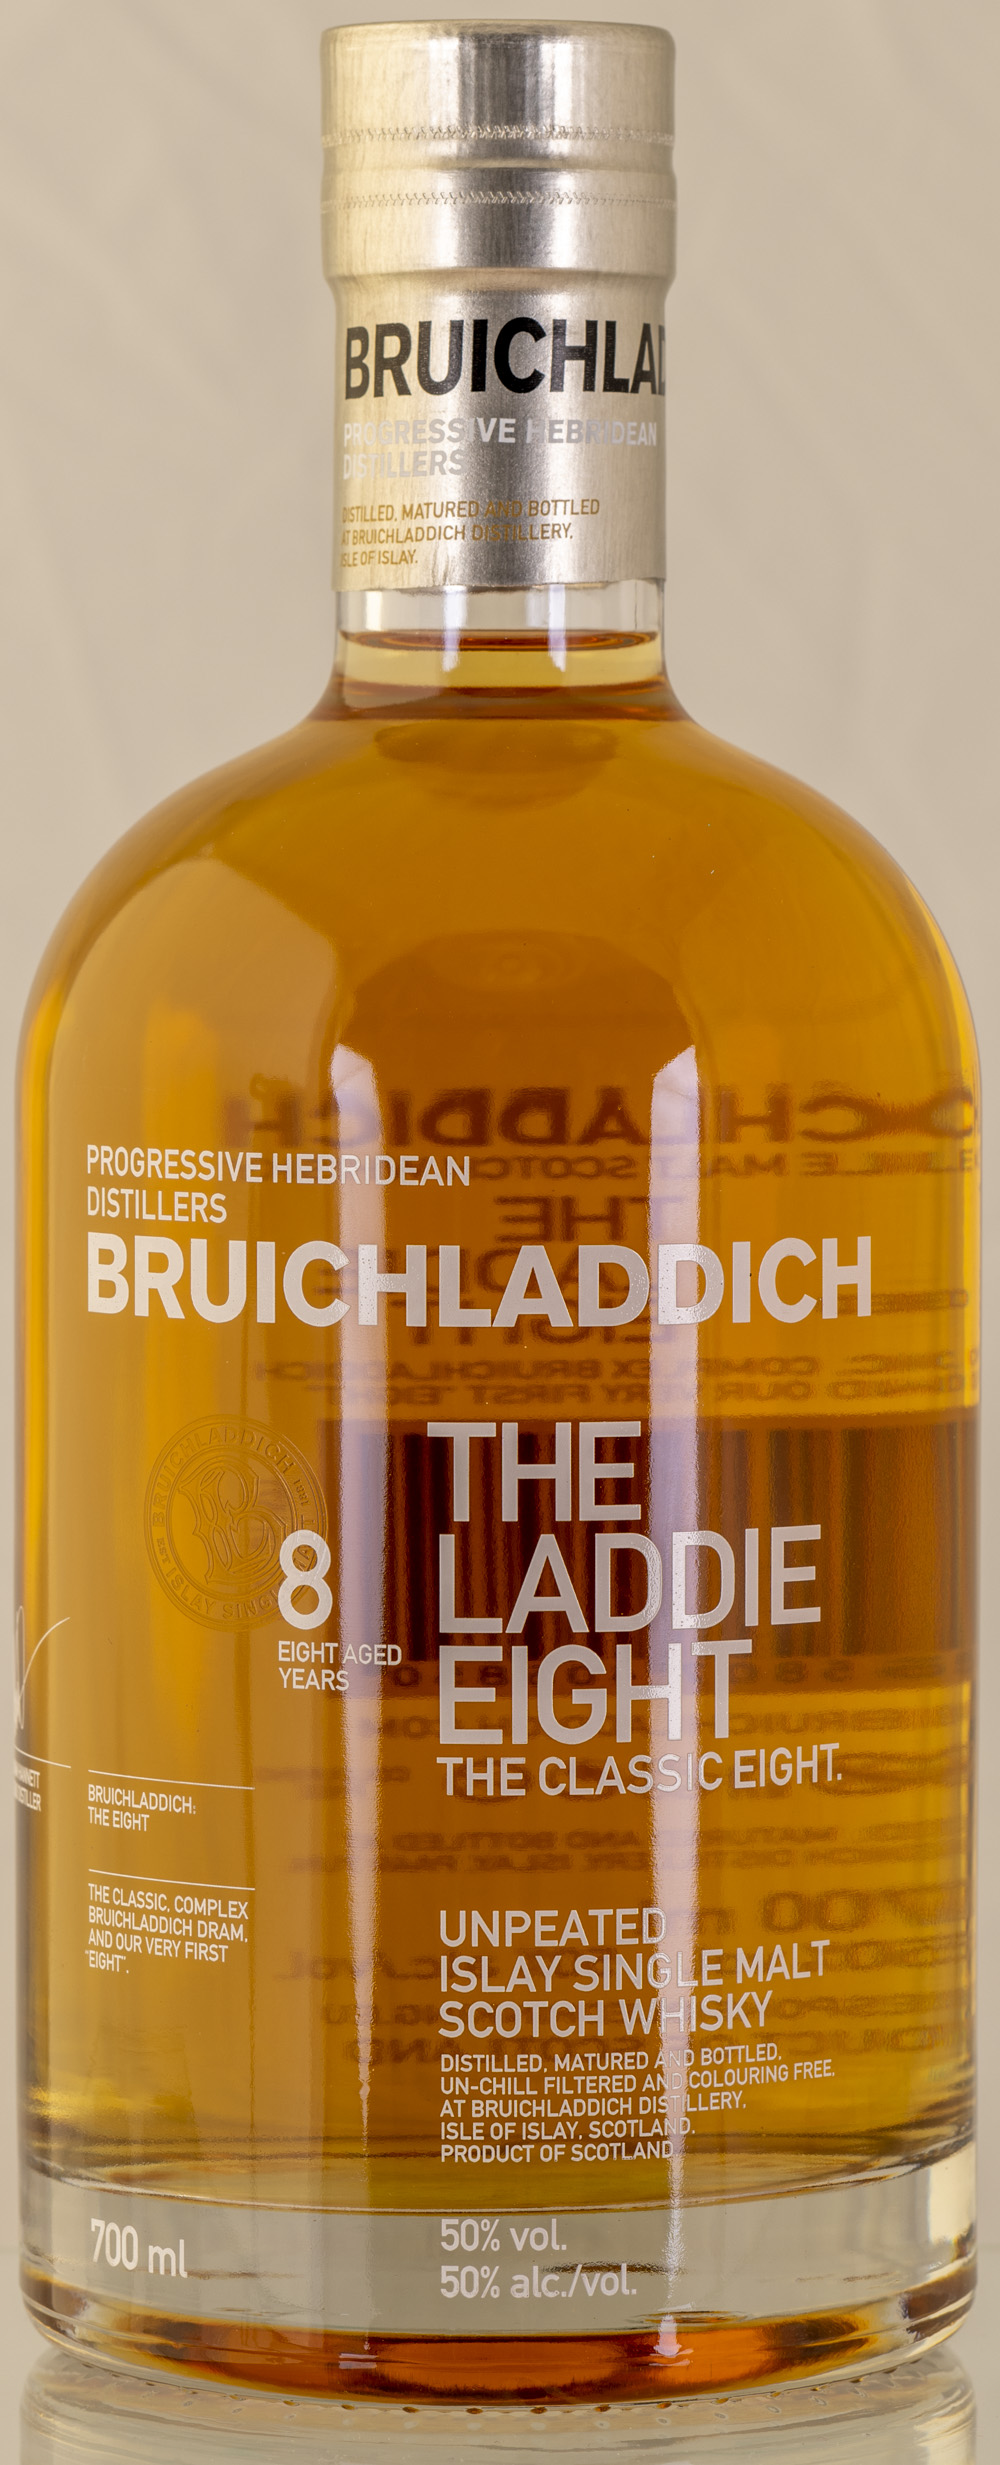 Billede: PHC_2294 - Bruichladdich The Laddie Eight - bottle front.jpg